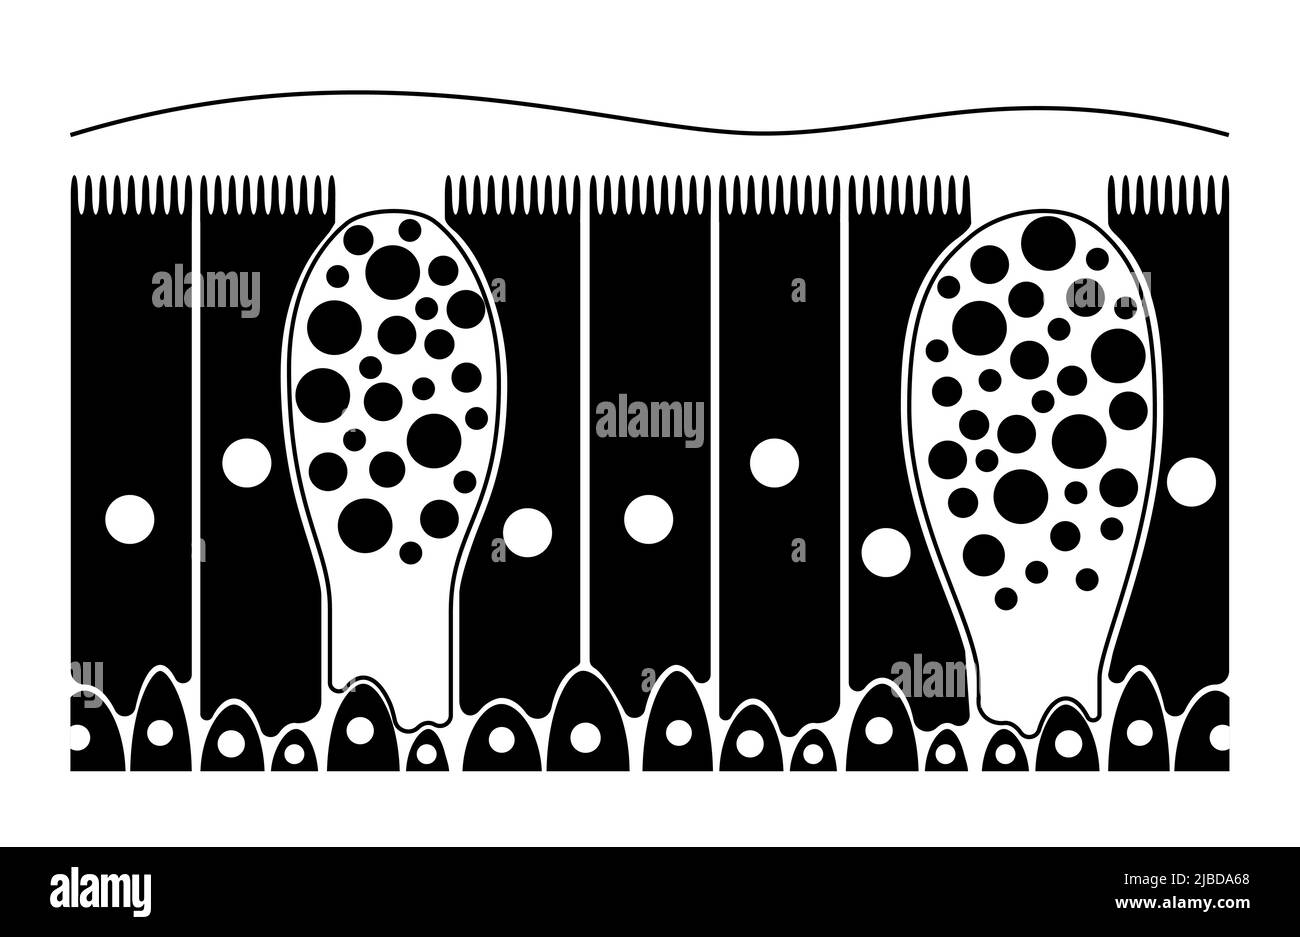 Nasal epithelium, illustration Stock Photo